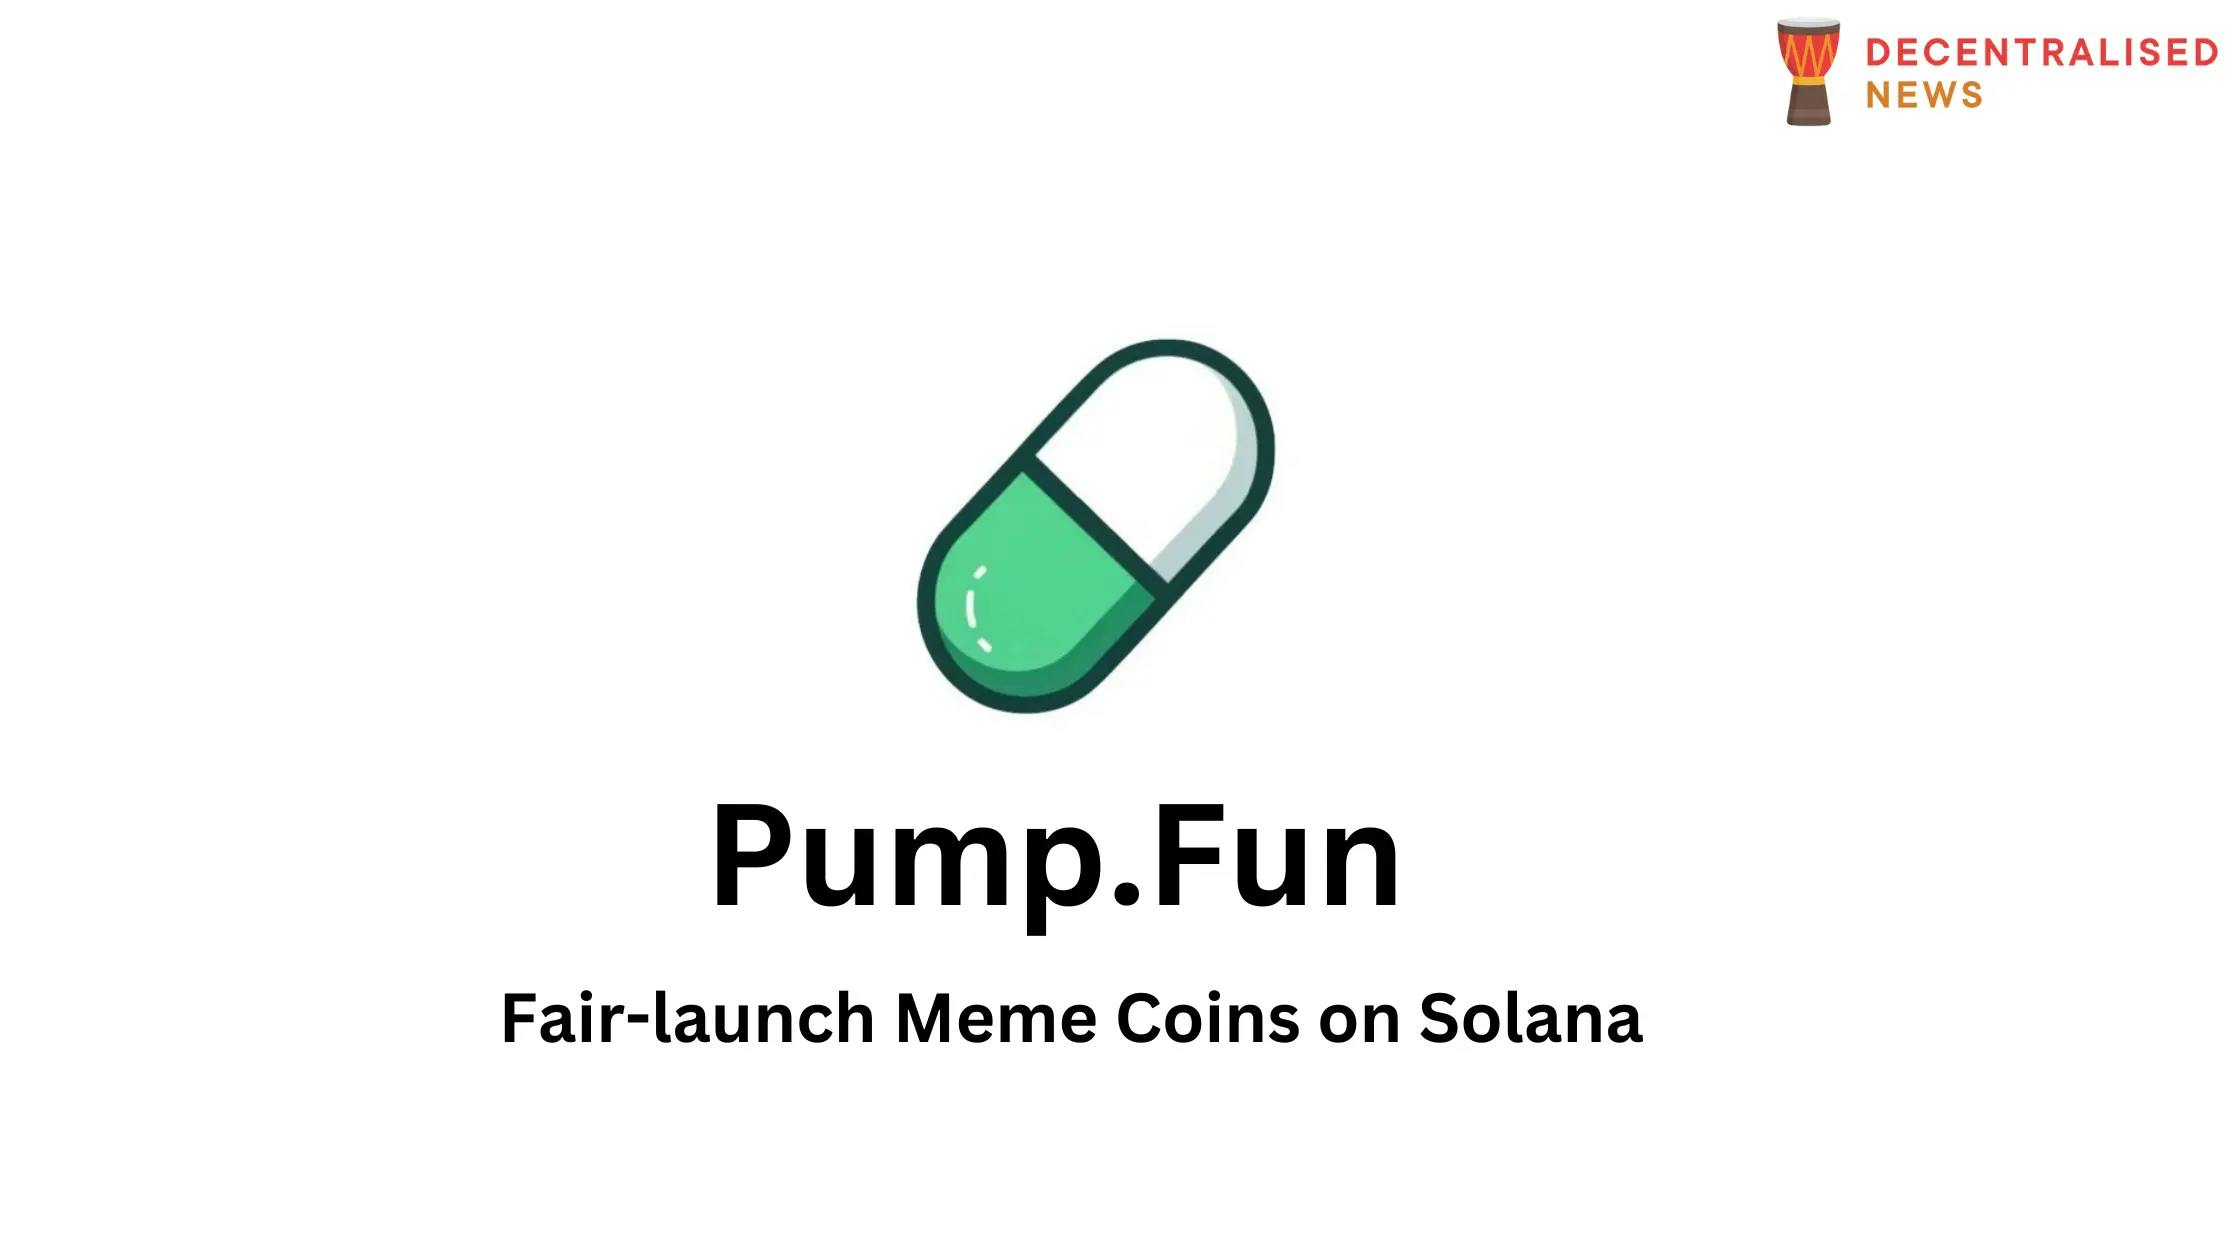 How to Create Meme Coins on Solana w/ Pump.Fun